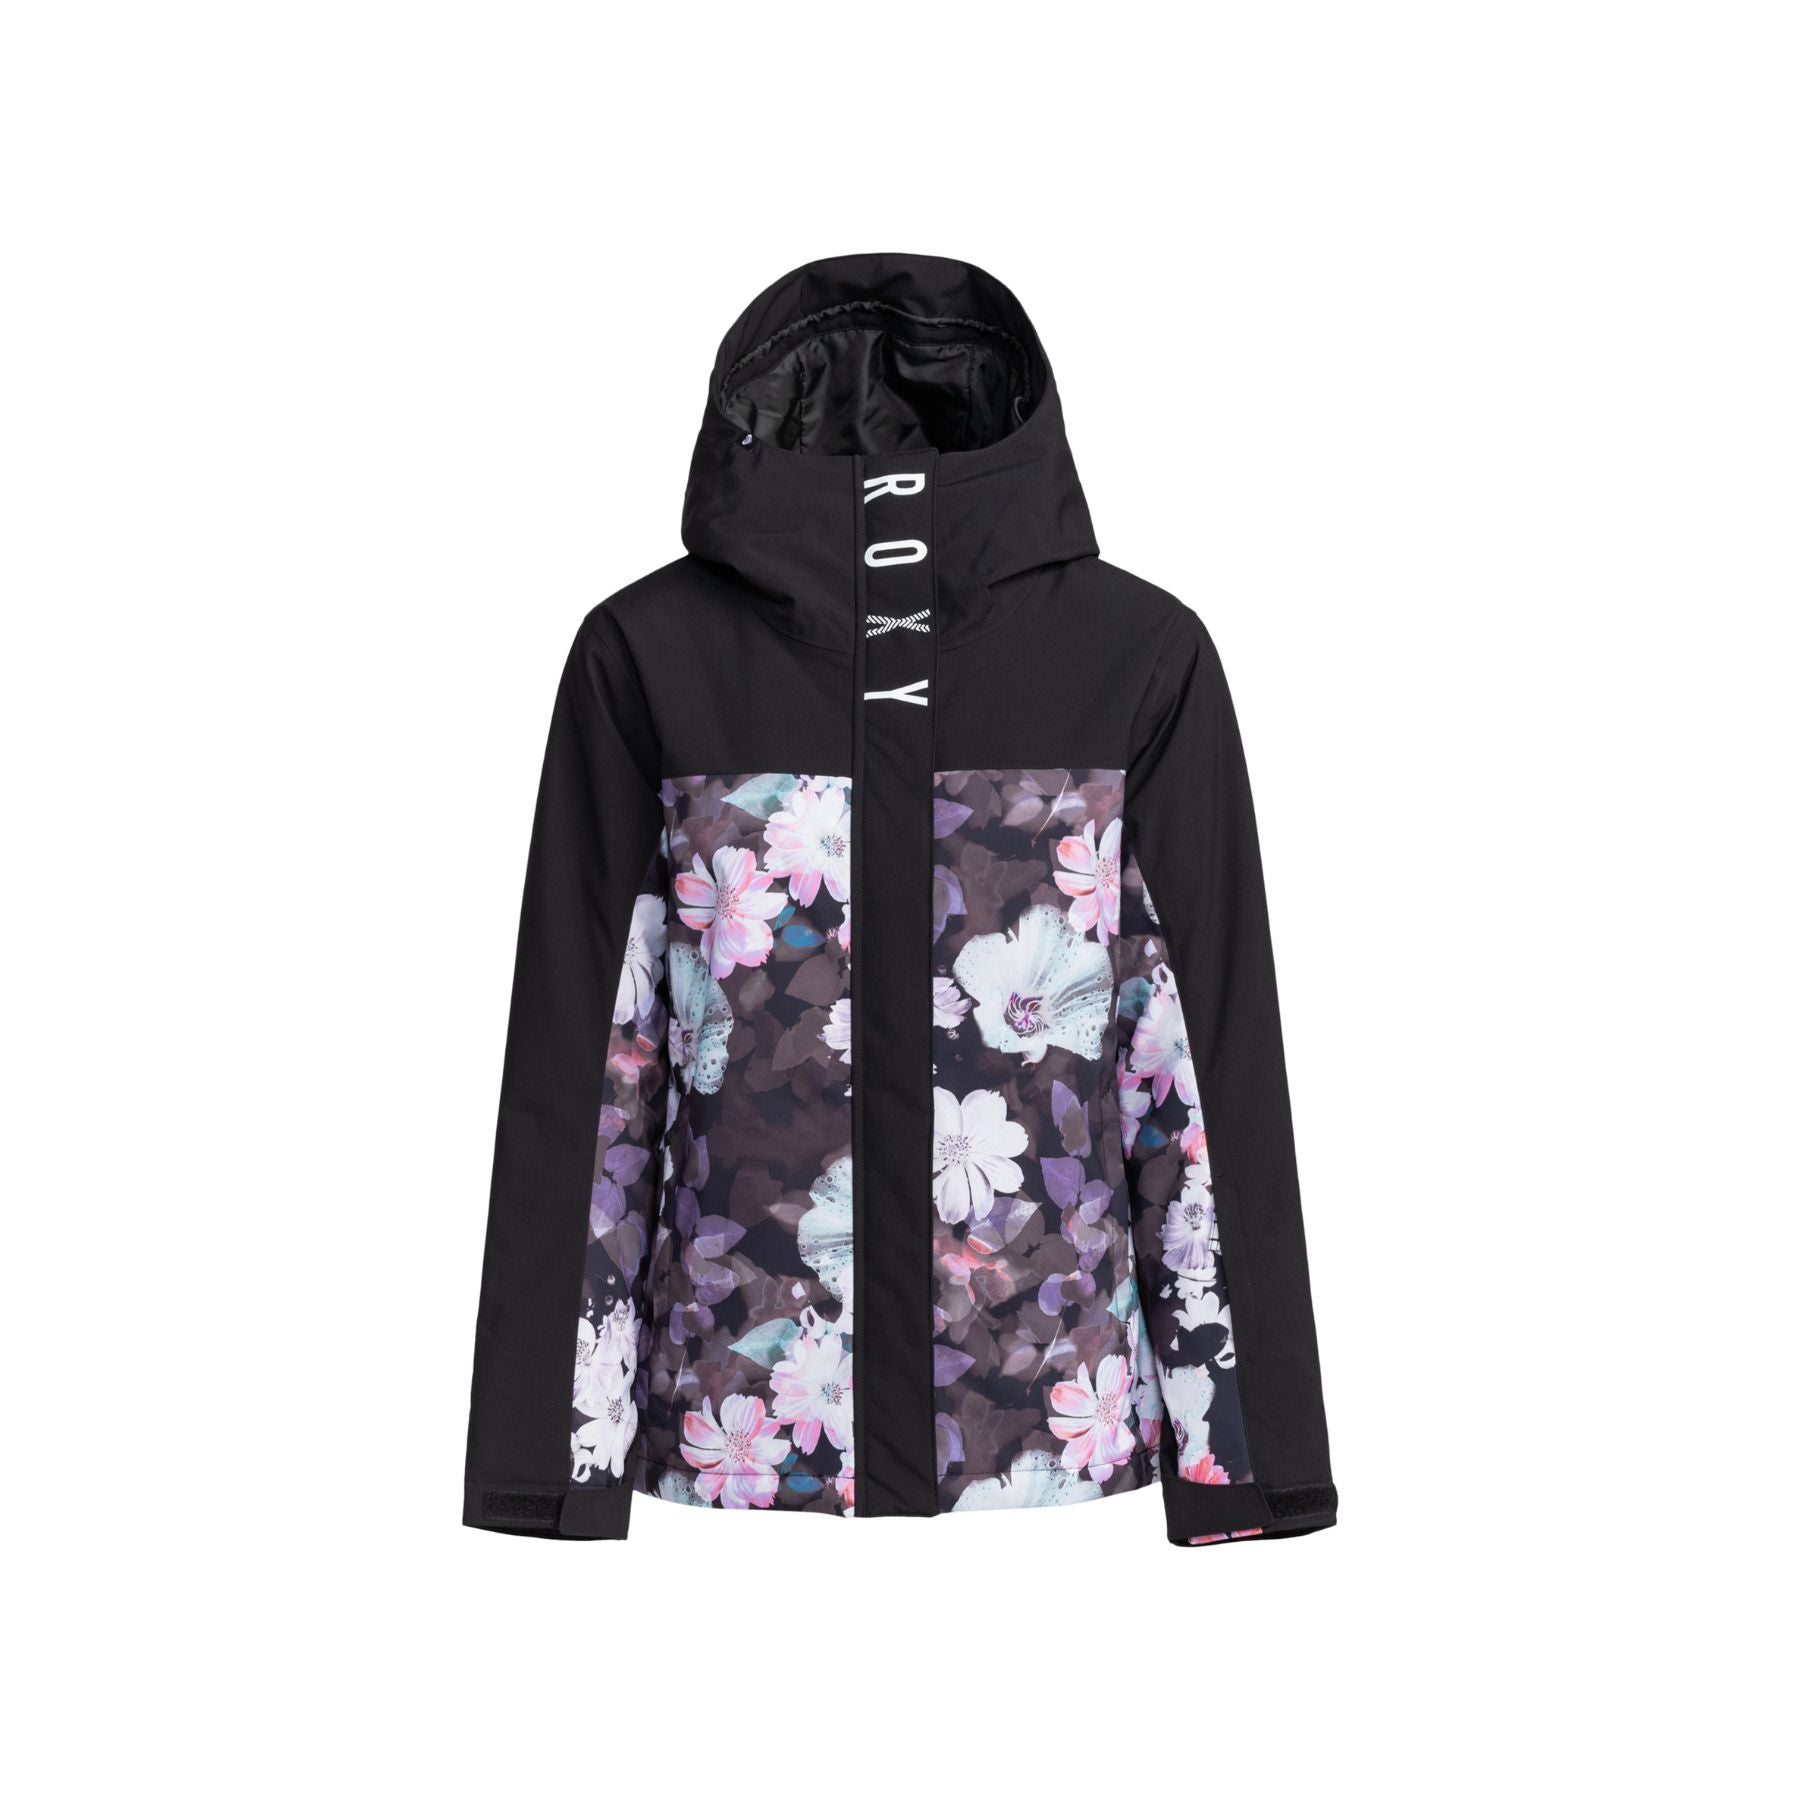 Roxy Galaxy Jacket in Blurry Flower